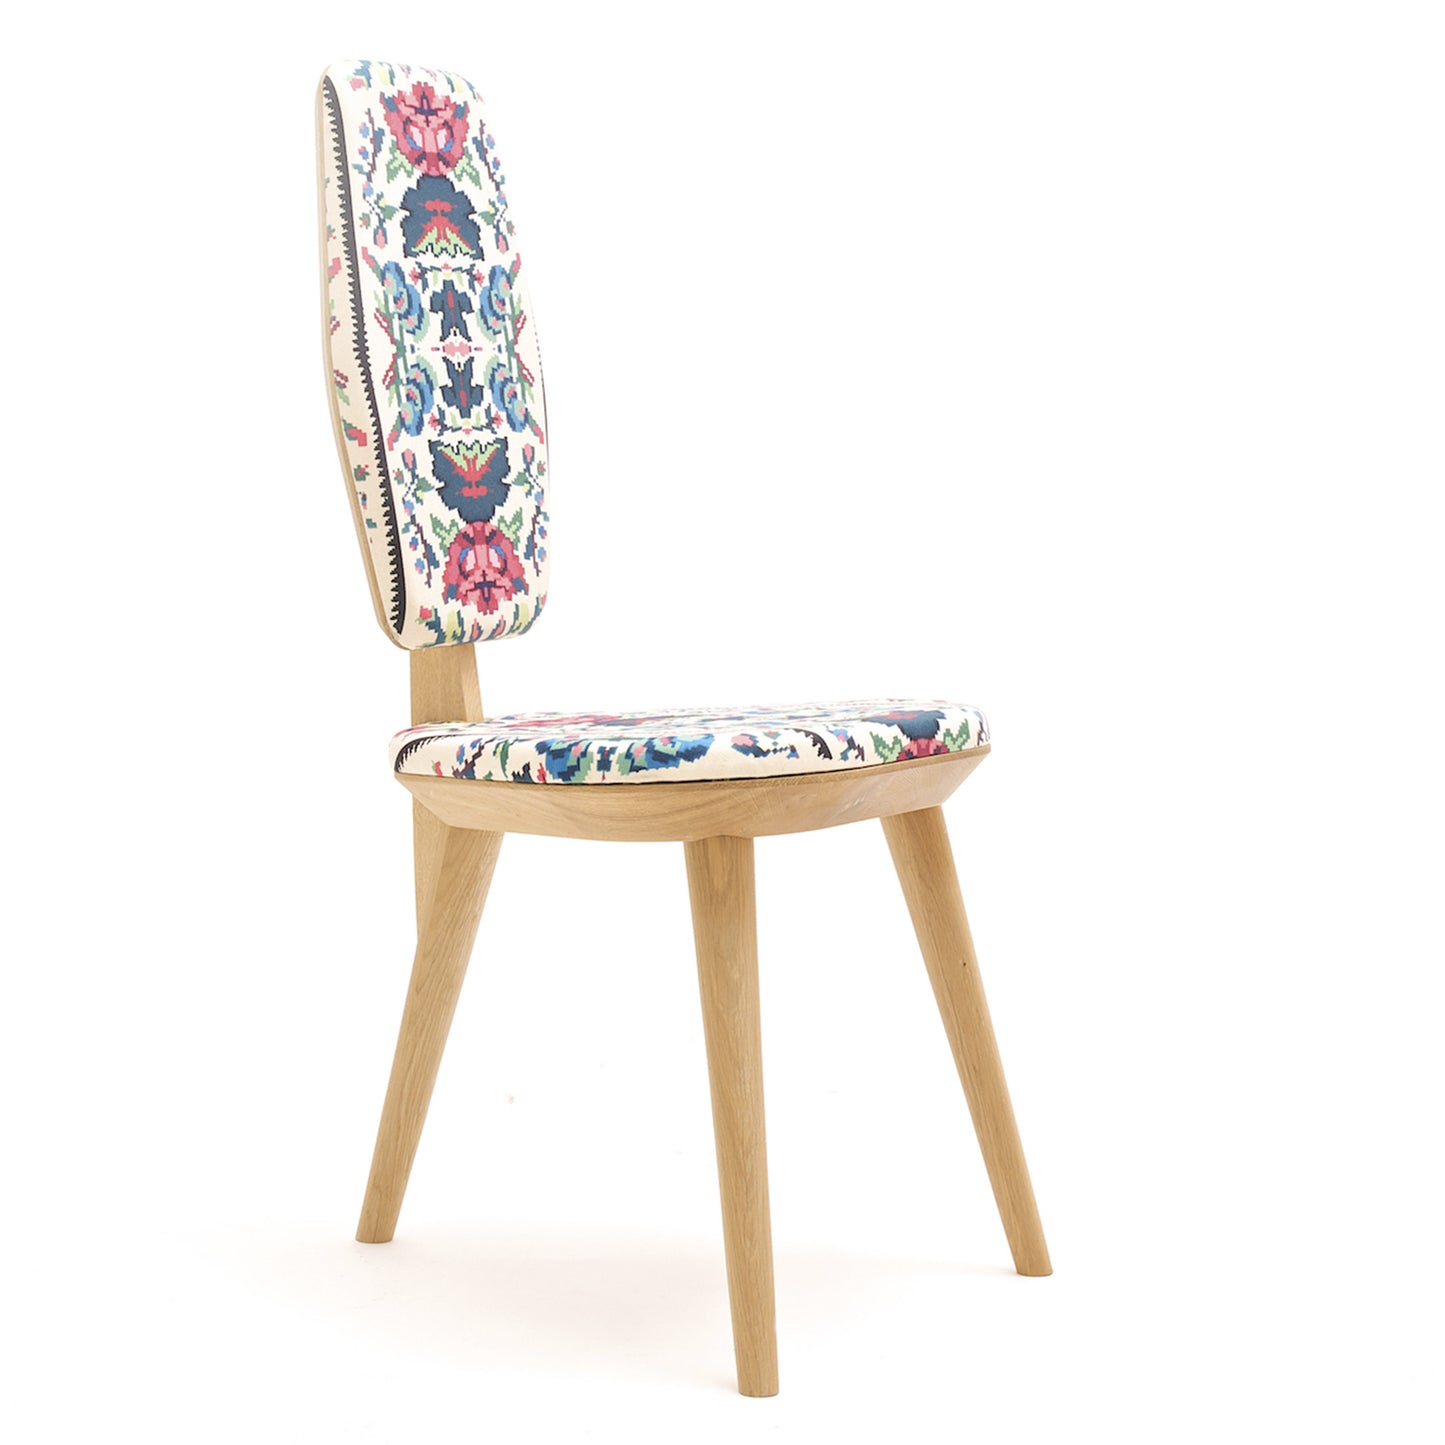 Lana Chair - Natural Wood